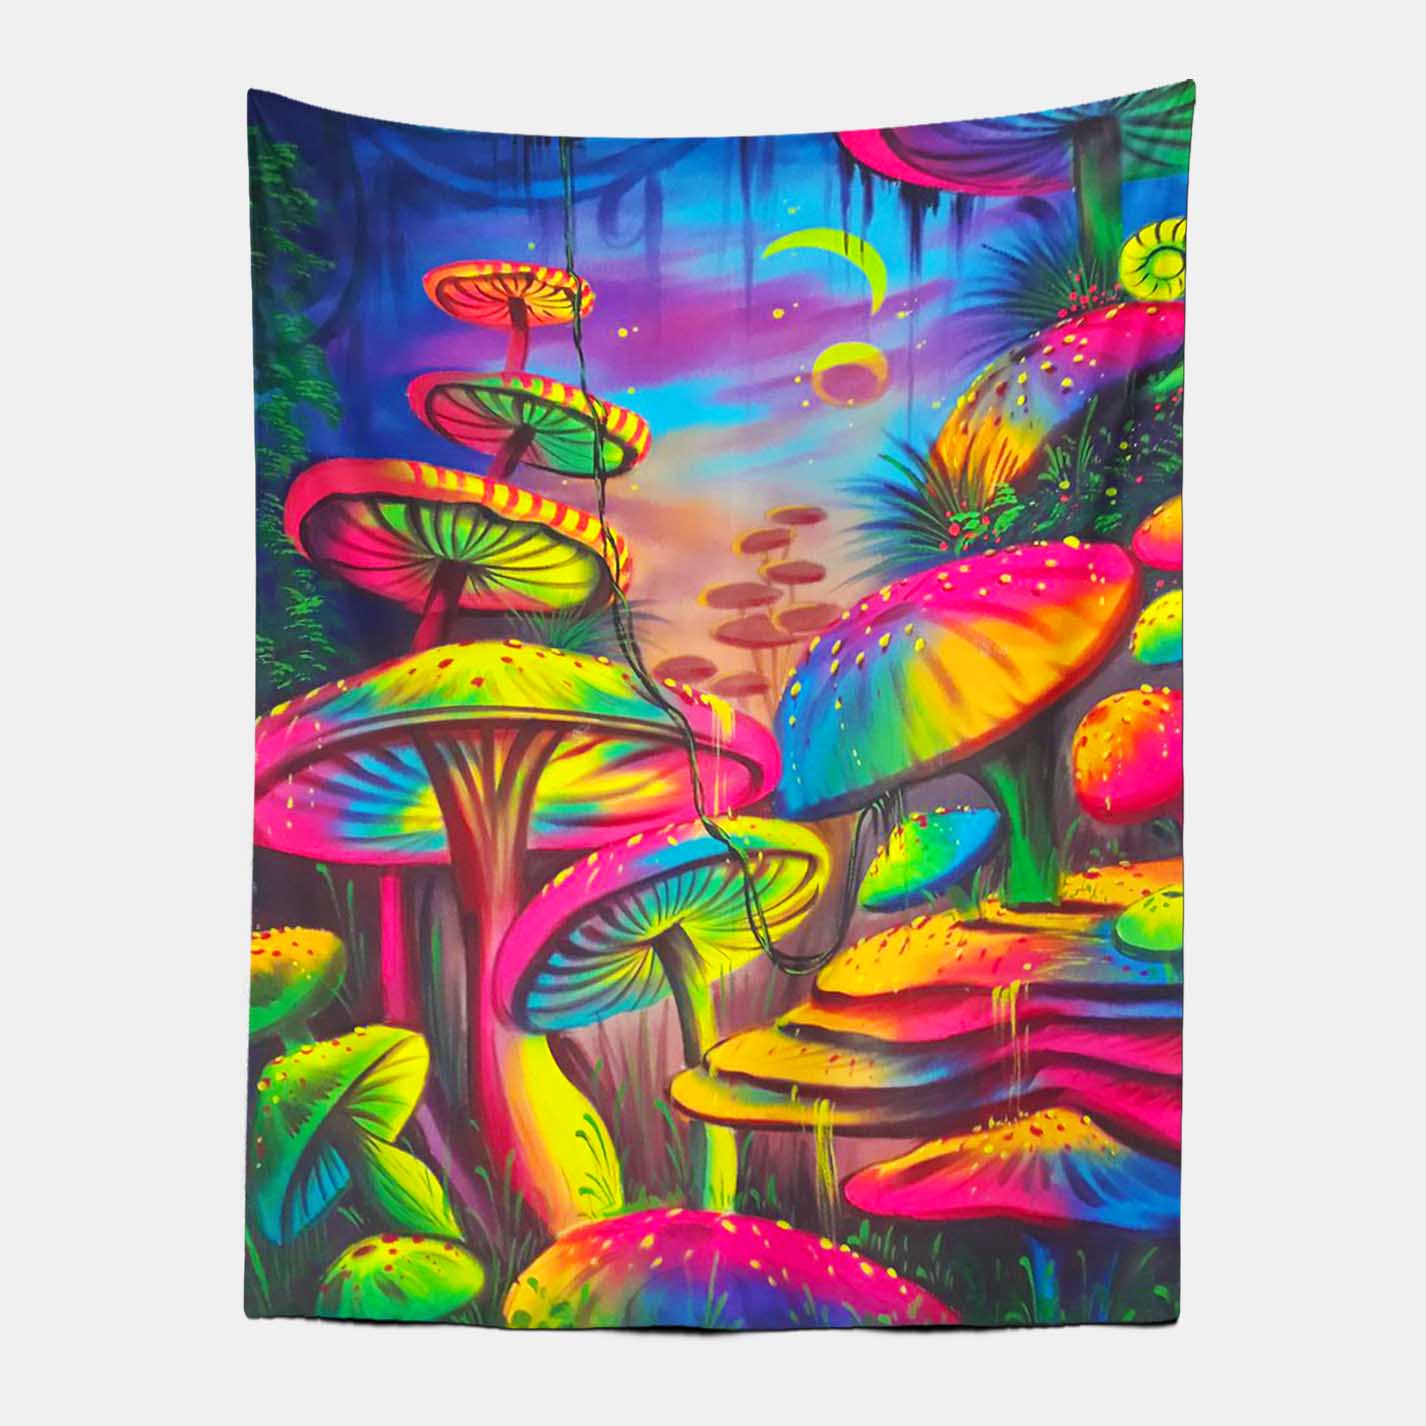 Trippy Dreamy Mushroom Tapestry